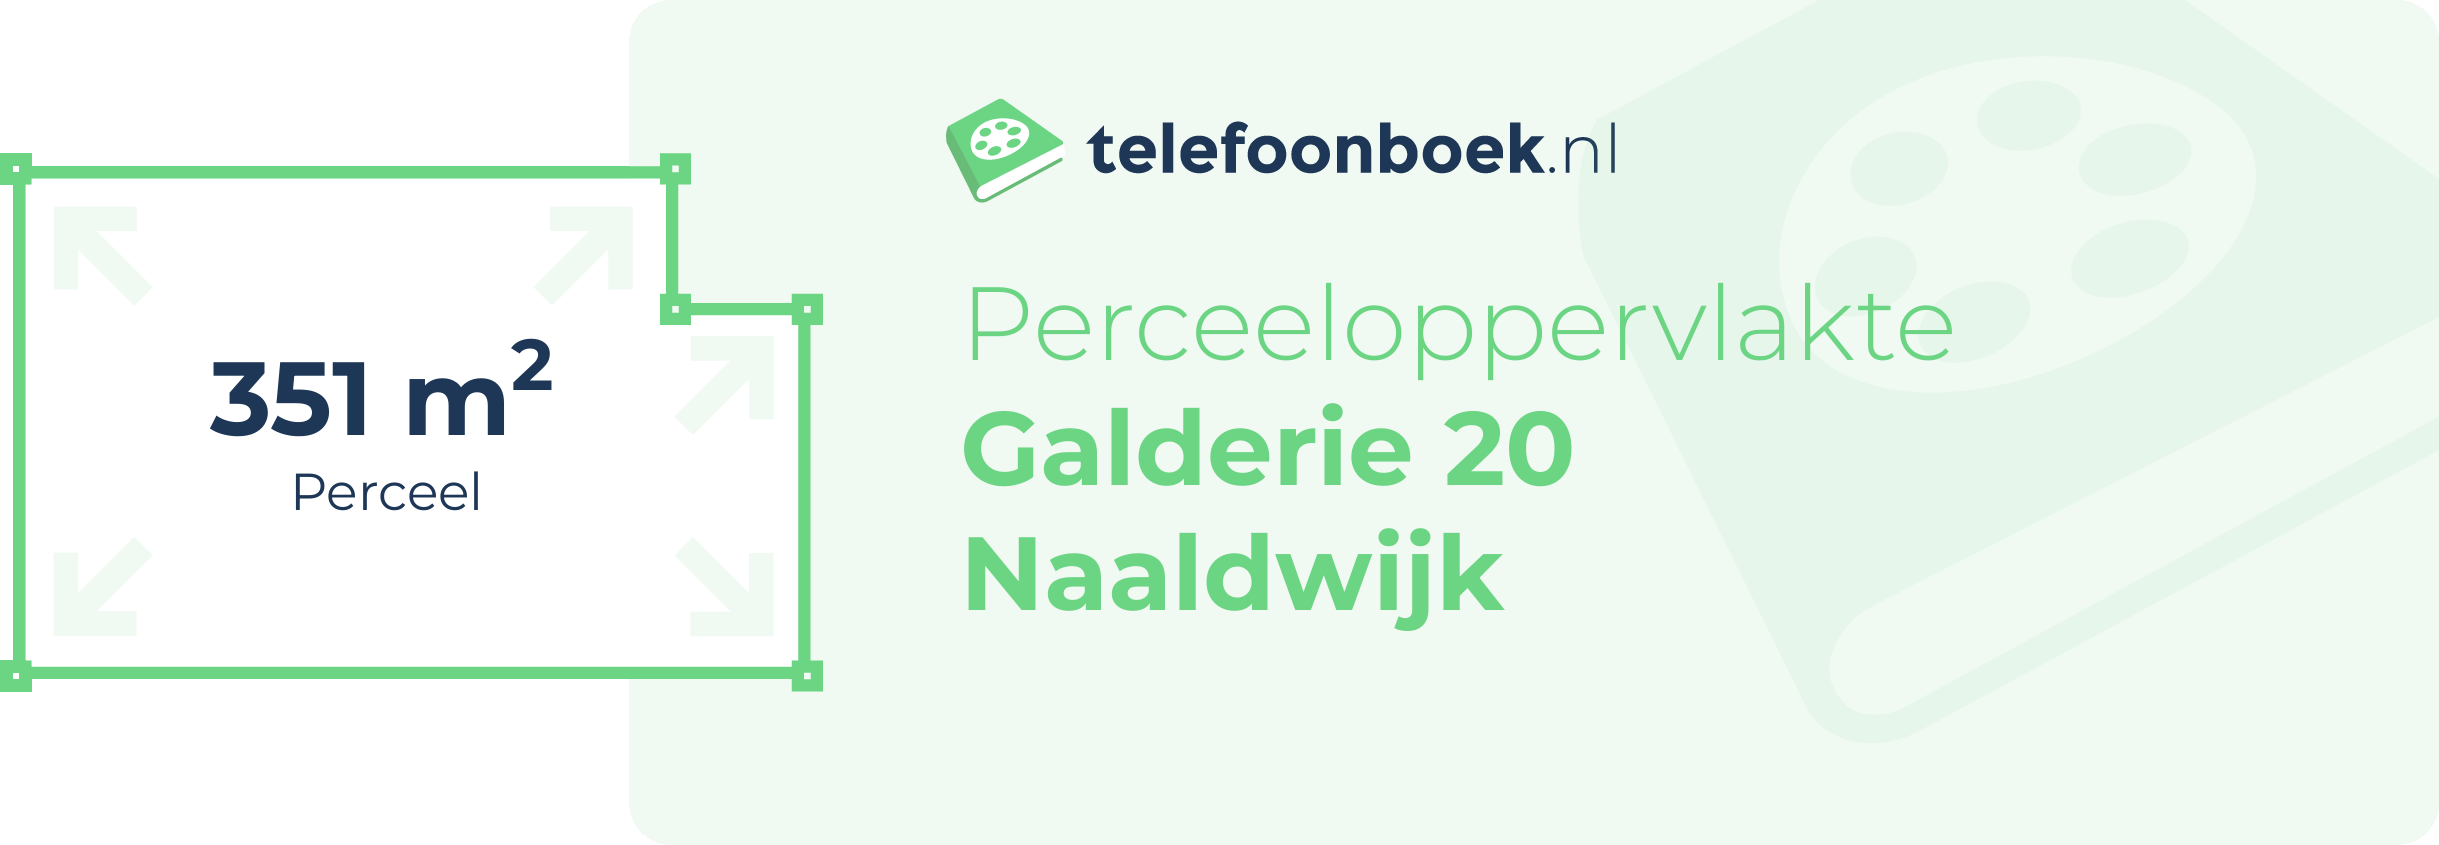 Perceeloppervlakte Galderie 20 Naaldwijk